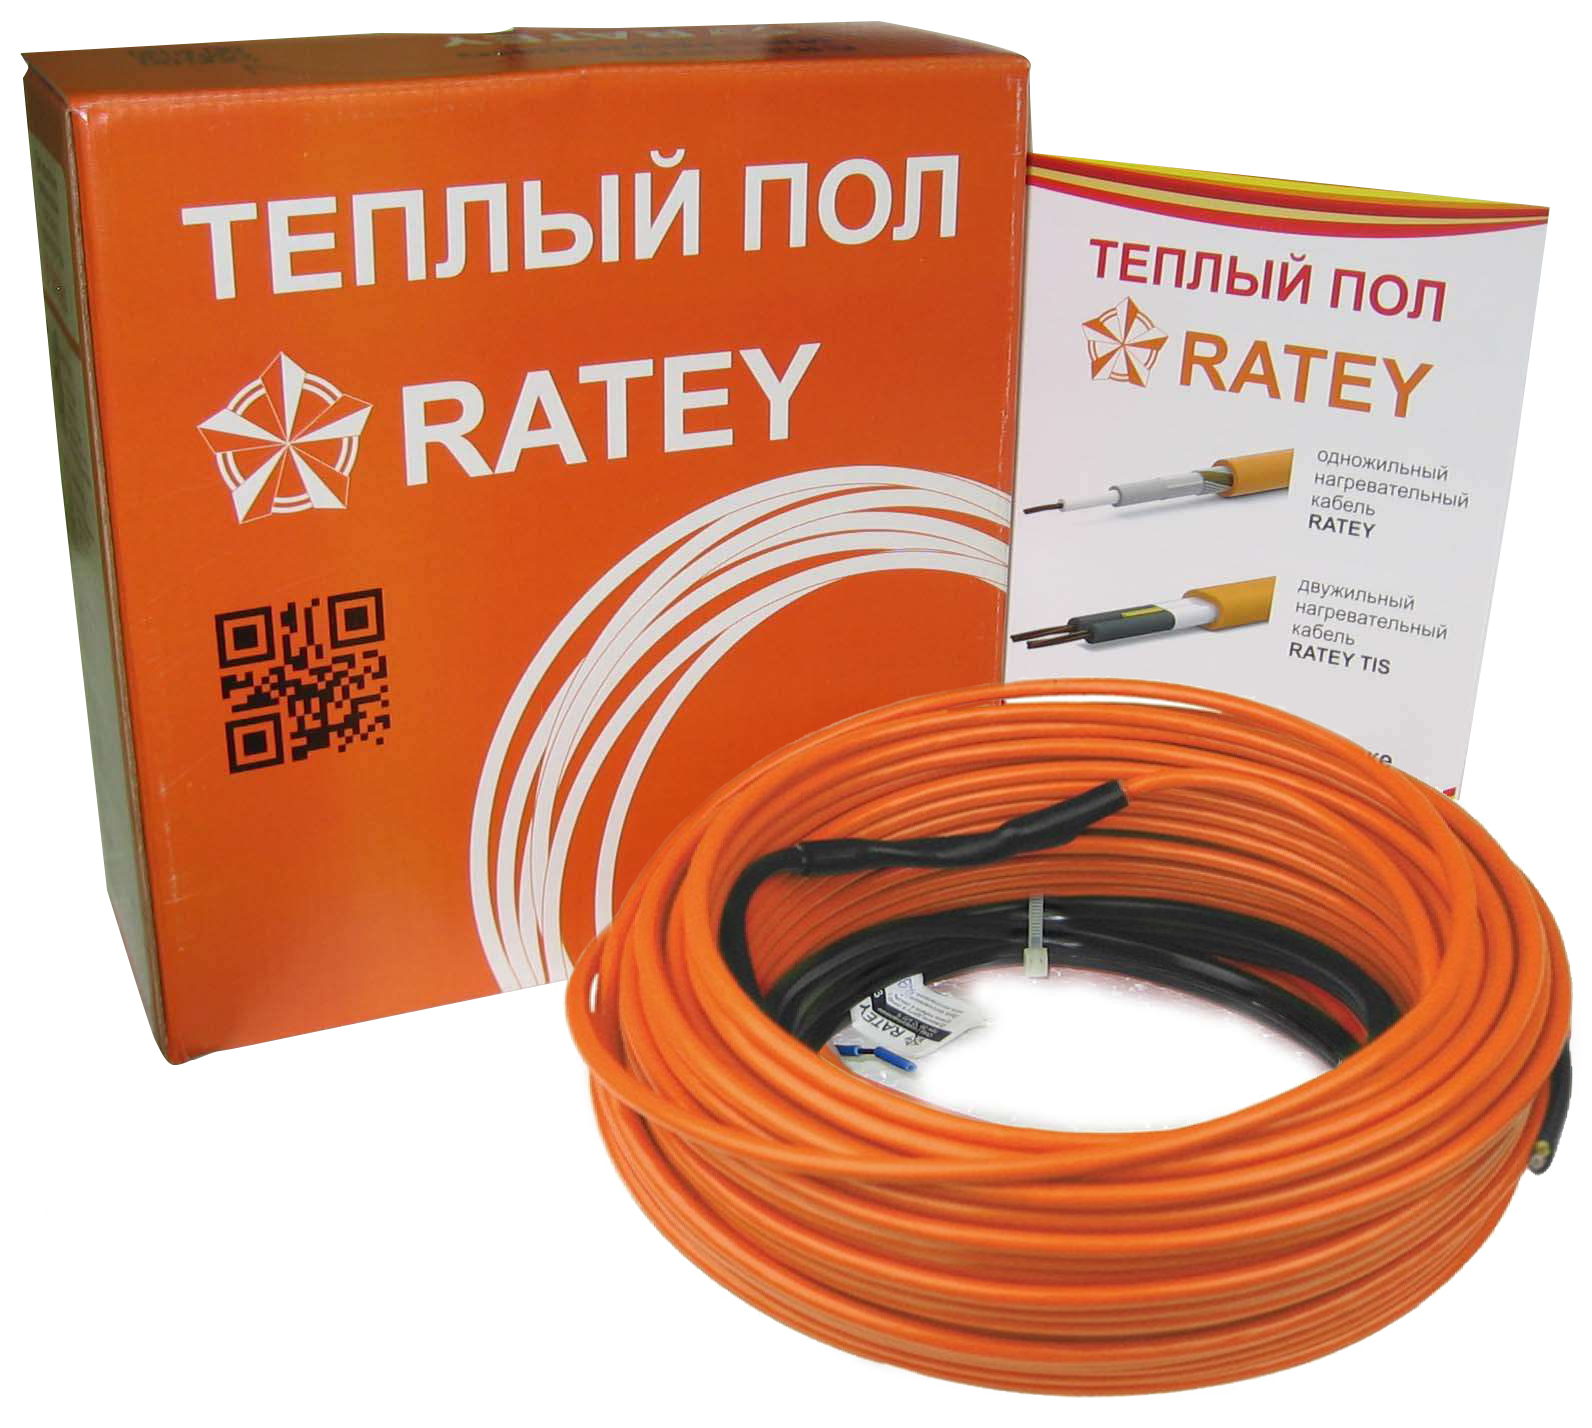 Электрический теплый пол Ratey RD1 0.820 в интернет-магазине, главное фото